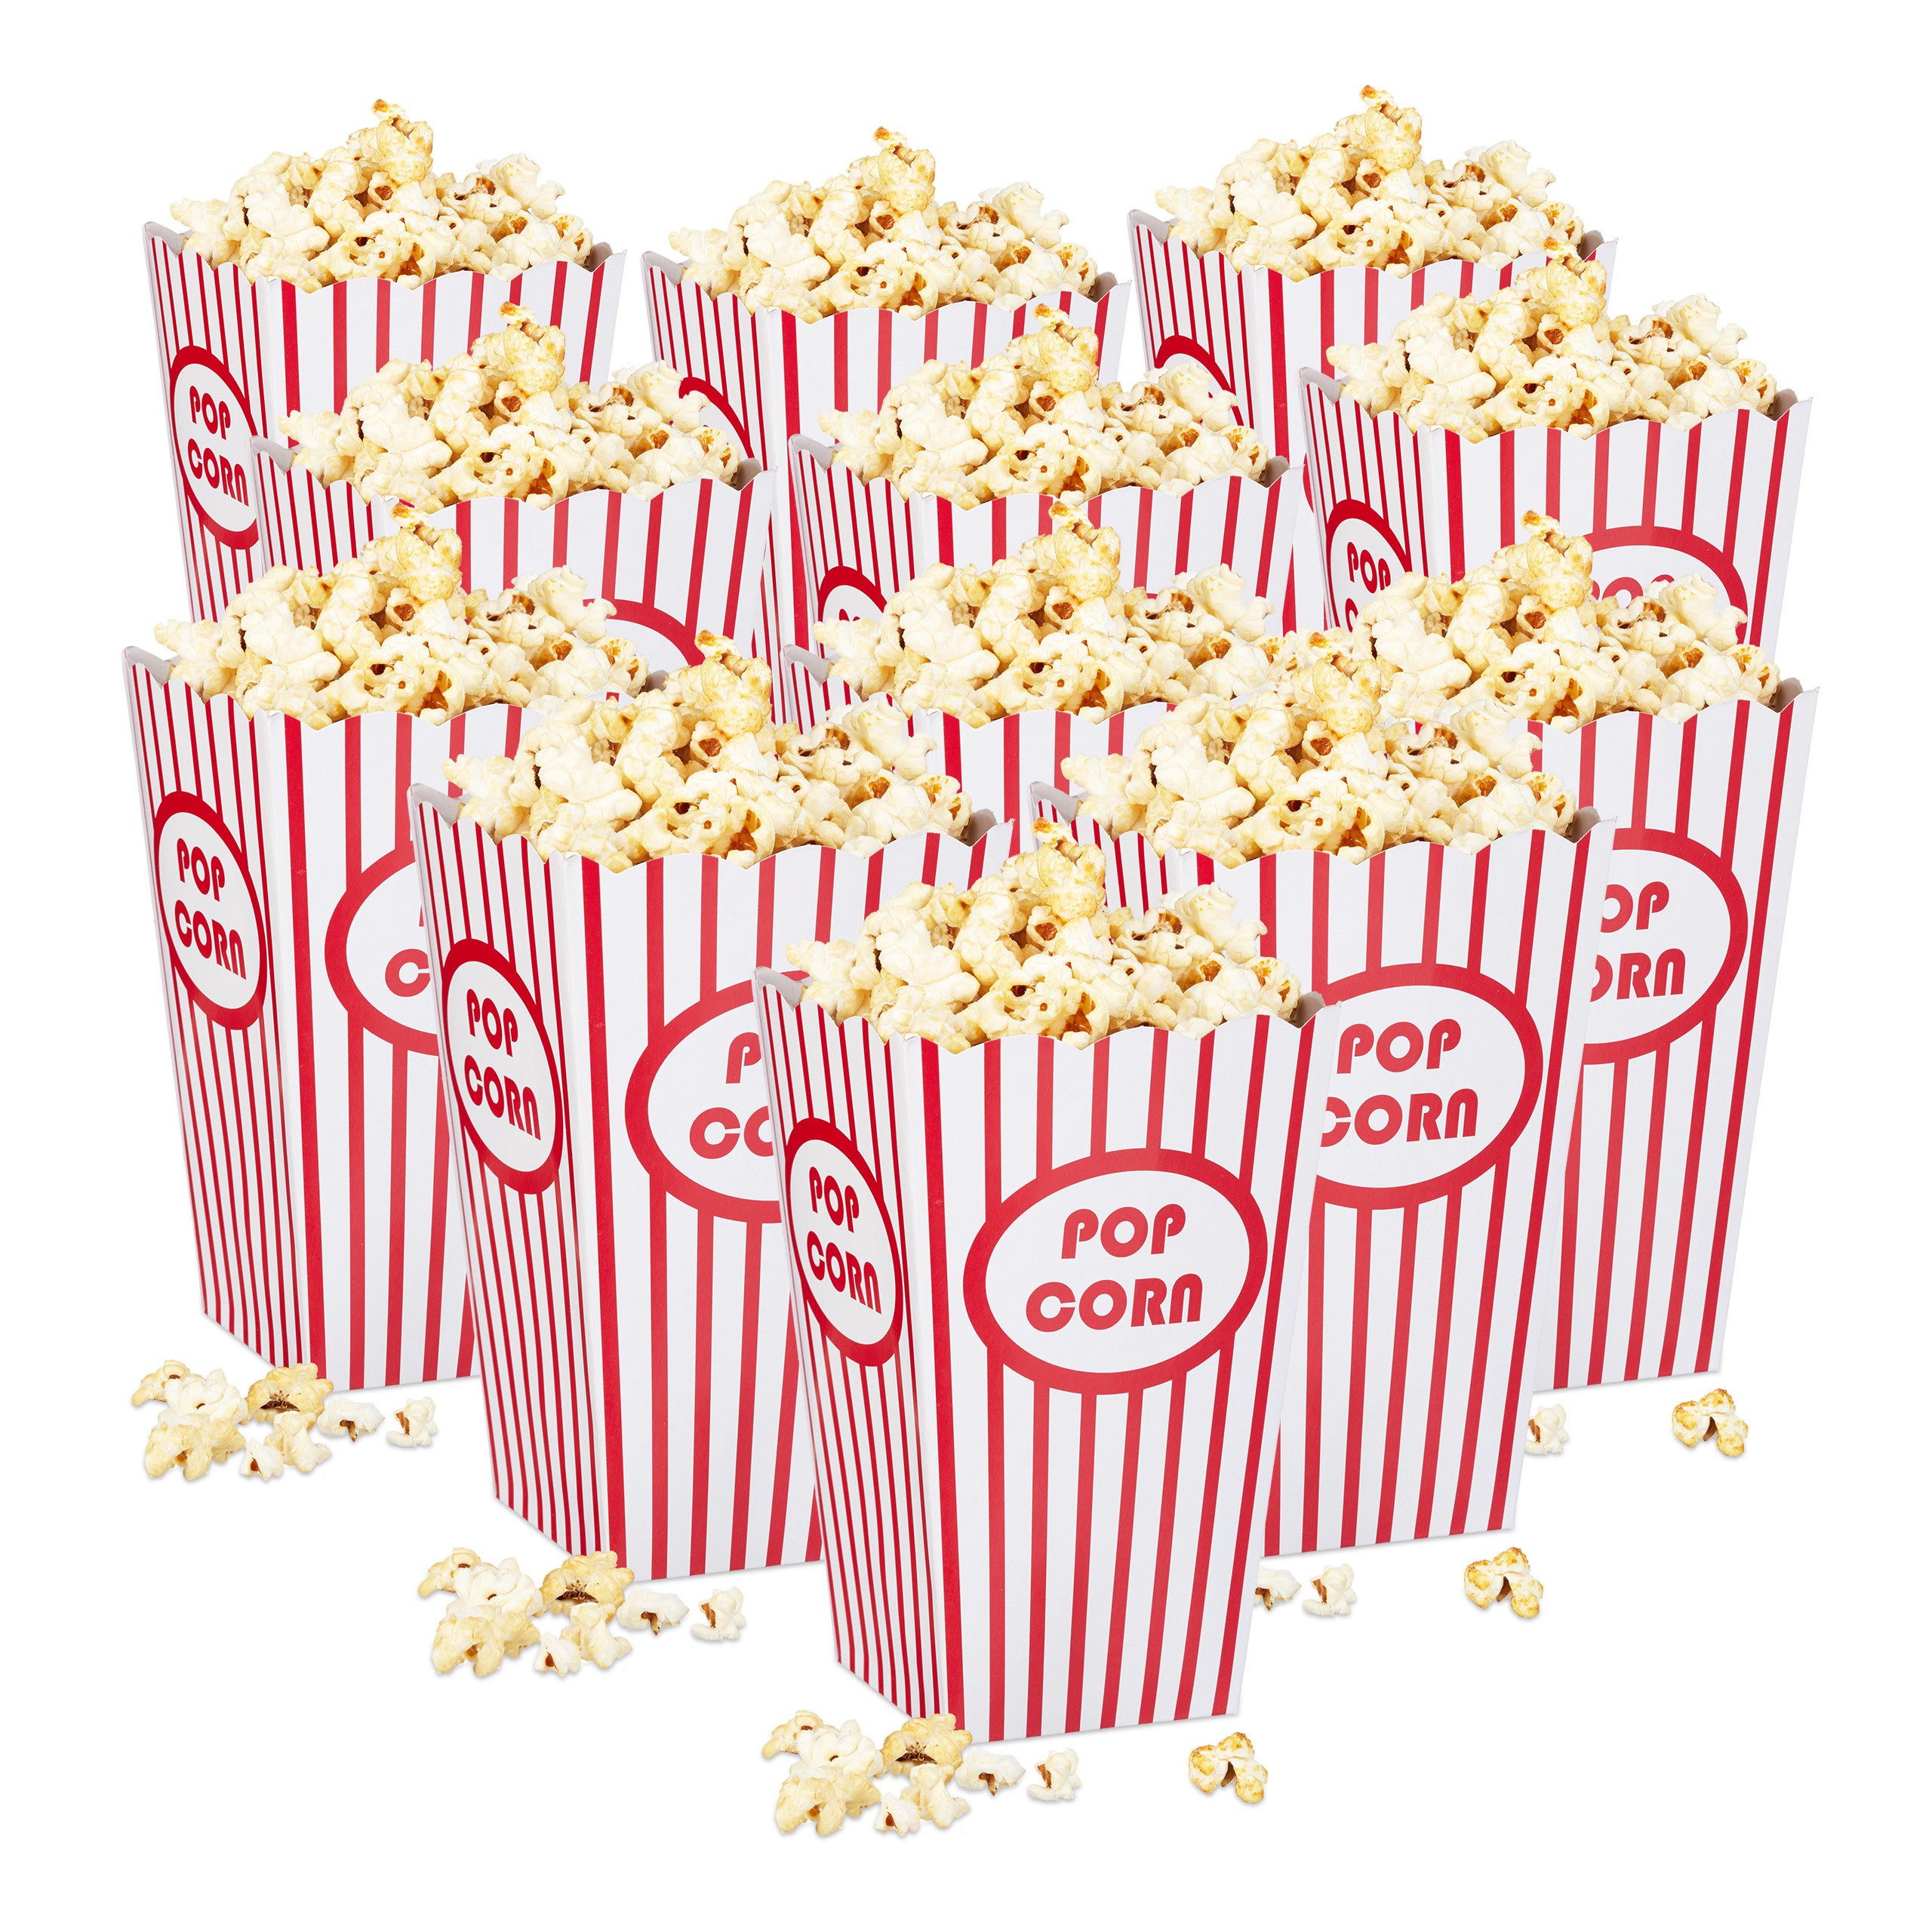 Relaxdays Set 576 Sacchetti Per Popcorn, Stile Retro USA, Cinema, Serata  Film, Compleanno Bimbi, Cartone, Rosso/Bianco